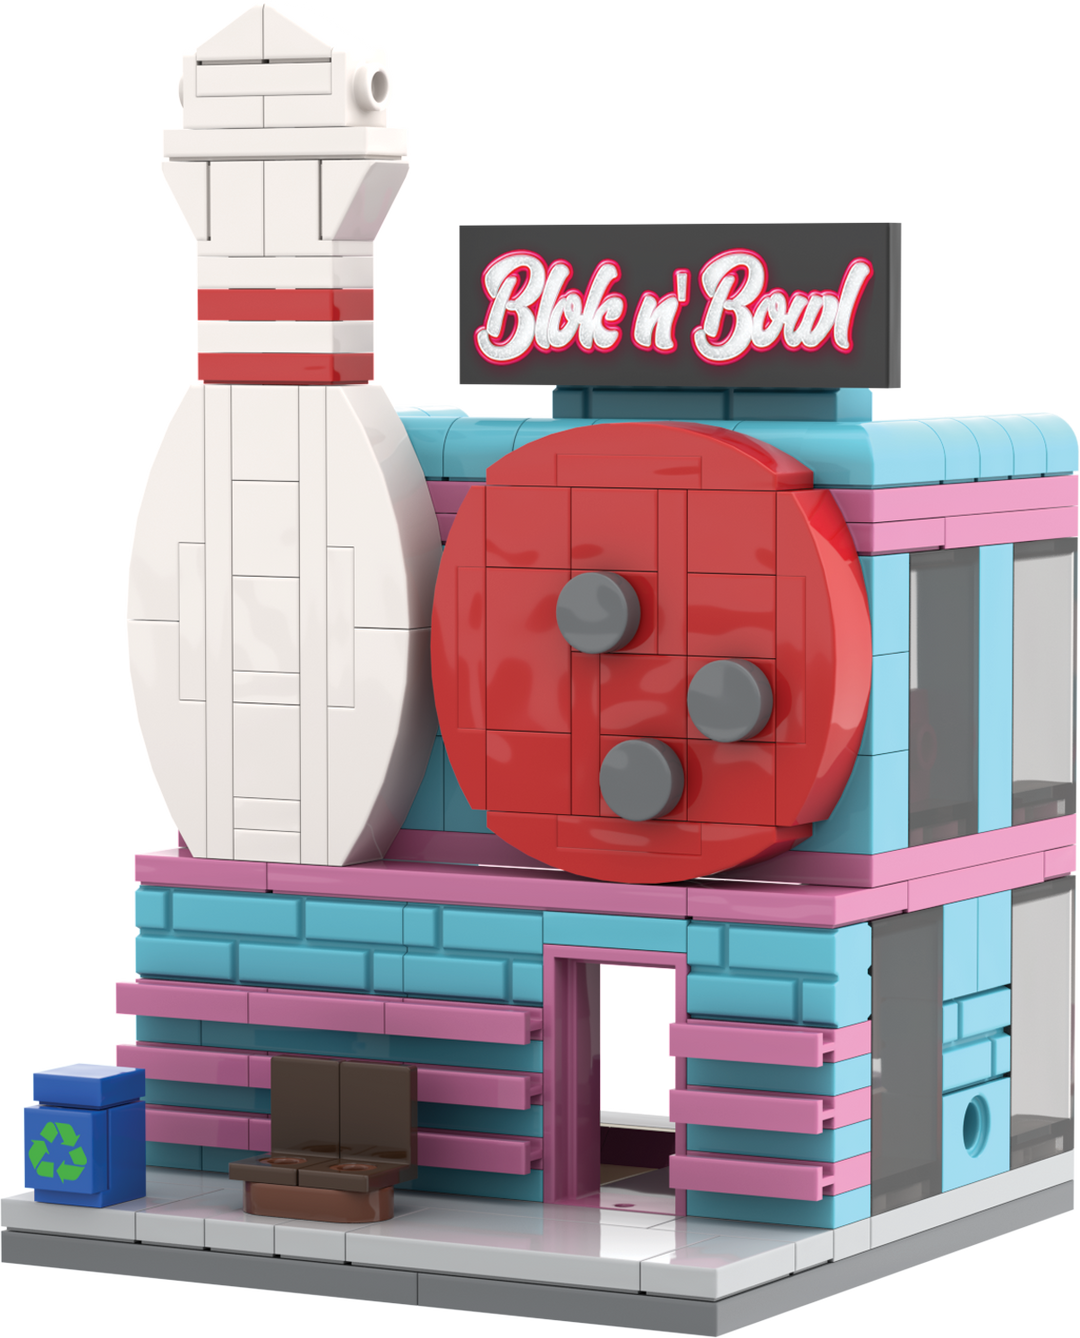 Mini City - Blok n' Bowl Bowling Alley